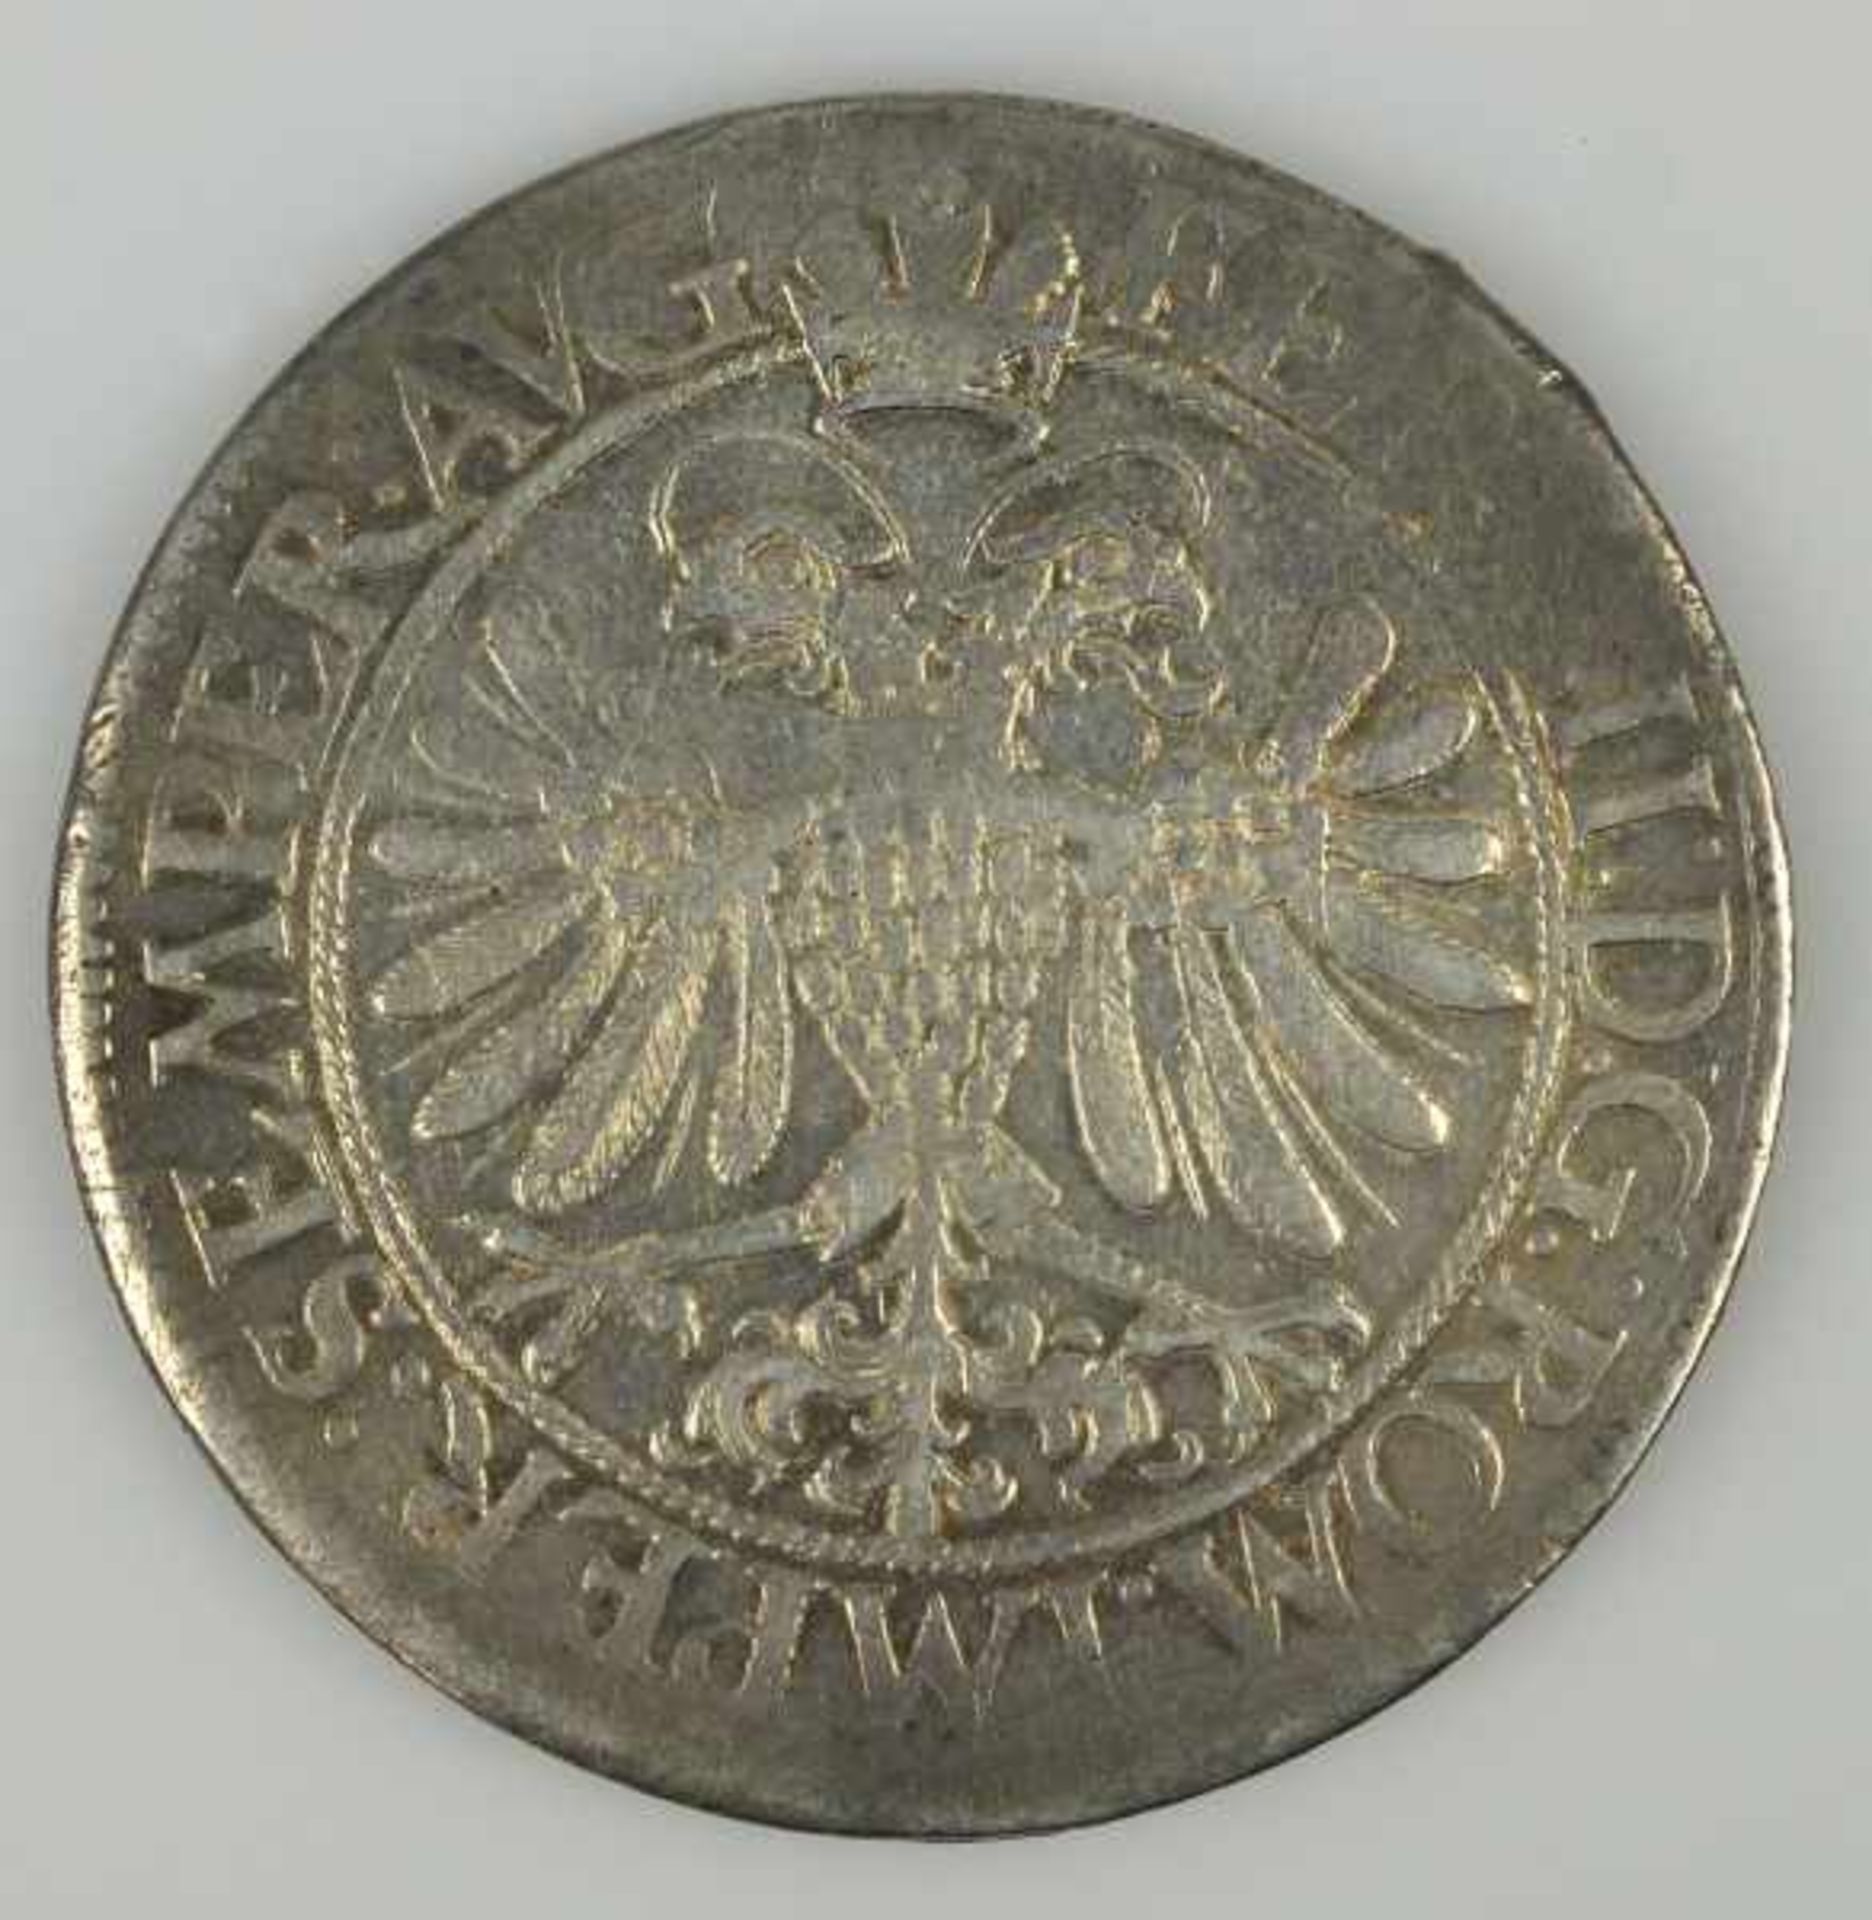 REICHSTALER STADT KONSTANZ mit Titel Kaiser Ferdinands II. (reg. 1619 - 1637), 1626, Silber, 28gr, D - Bild 2 aus 2